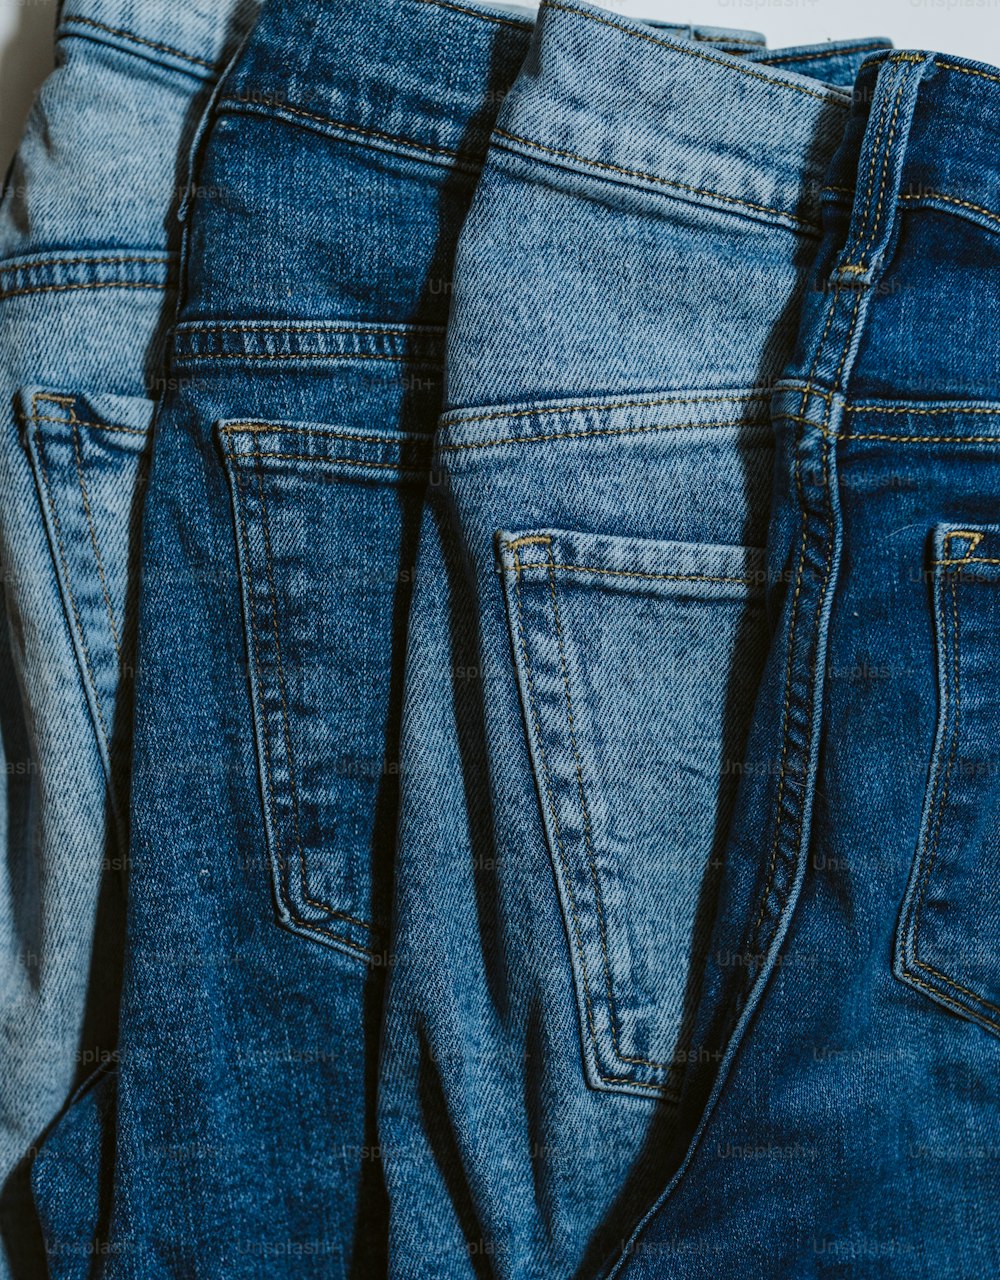 Trois paires de jeans sont alignées sur une surface blanche